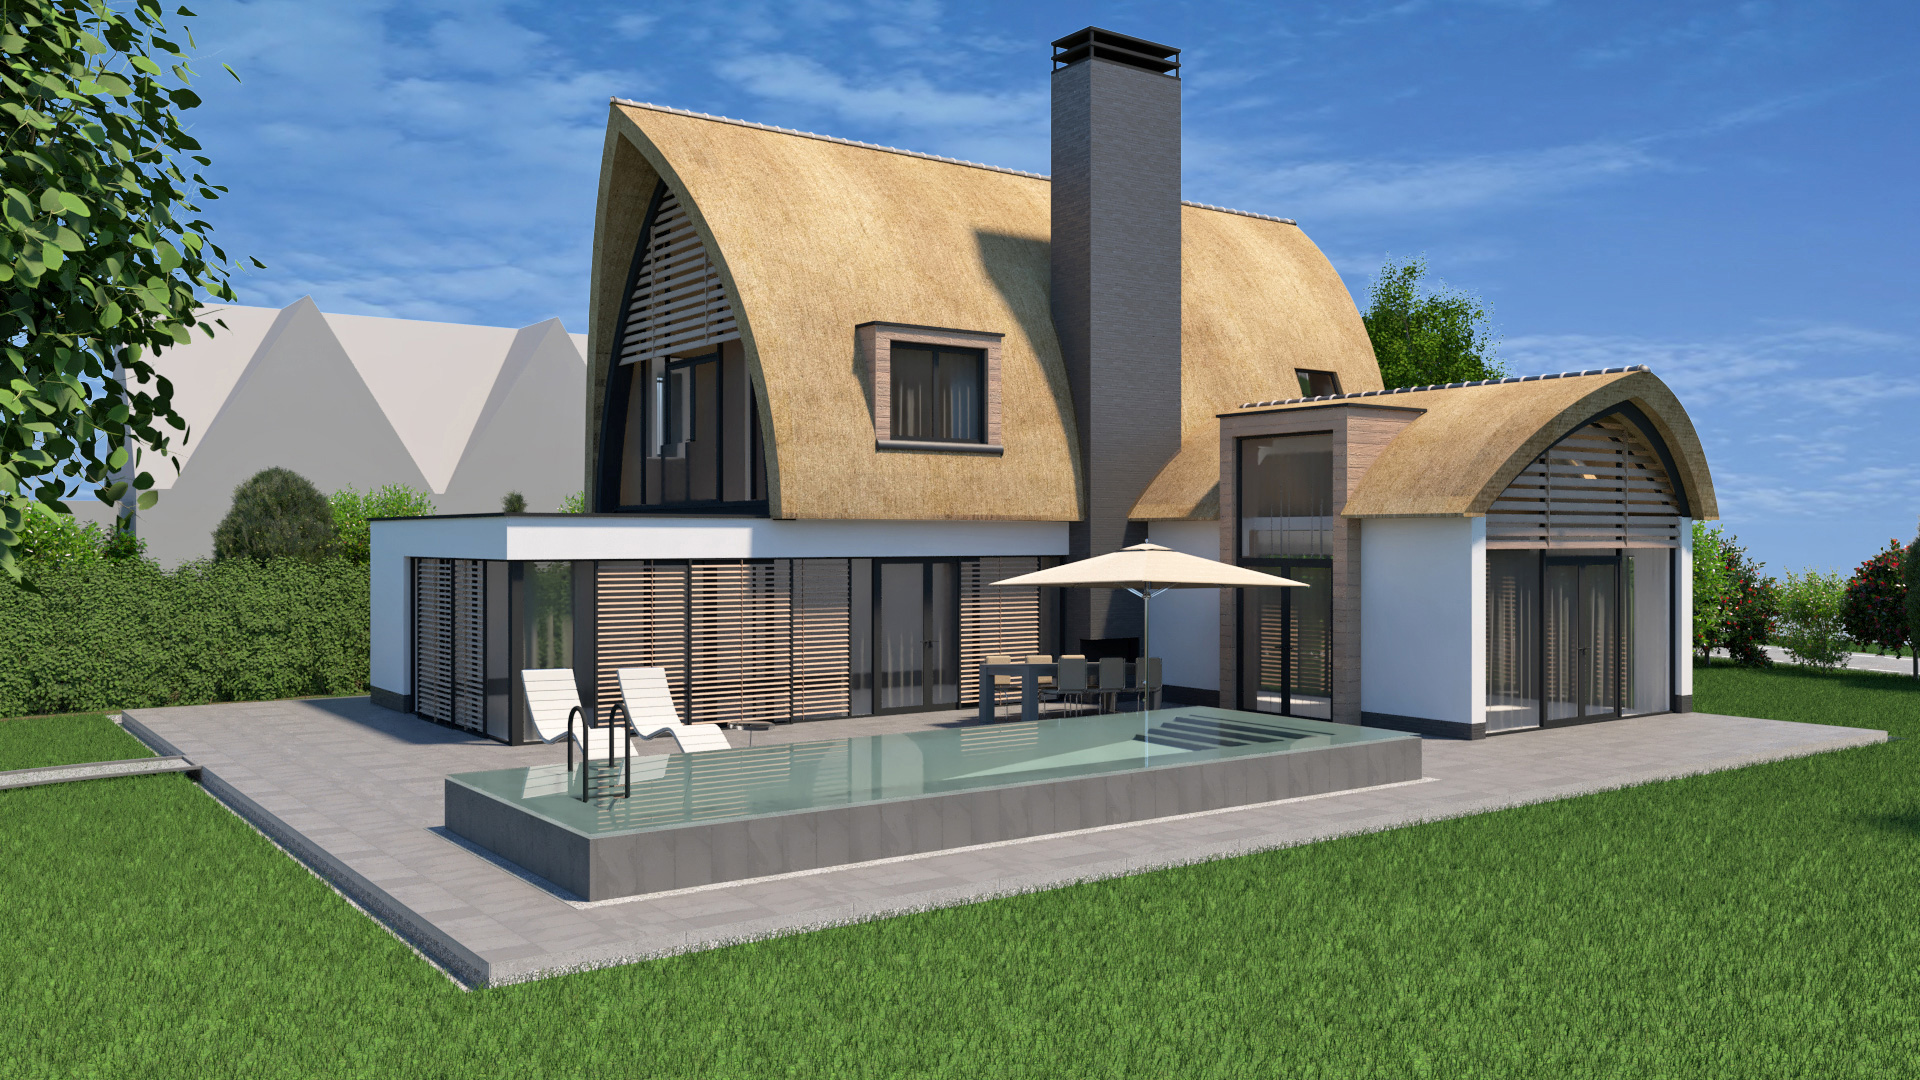 Nieuwbouw ontwerp voor vrijstaande woning in Kortenhoef aan de Loosdrechtse plassen door architect amsterdam Maxim Winkelaar